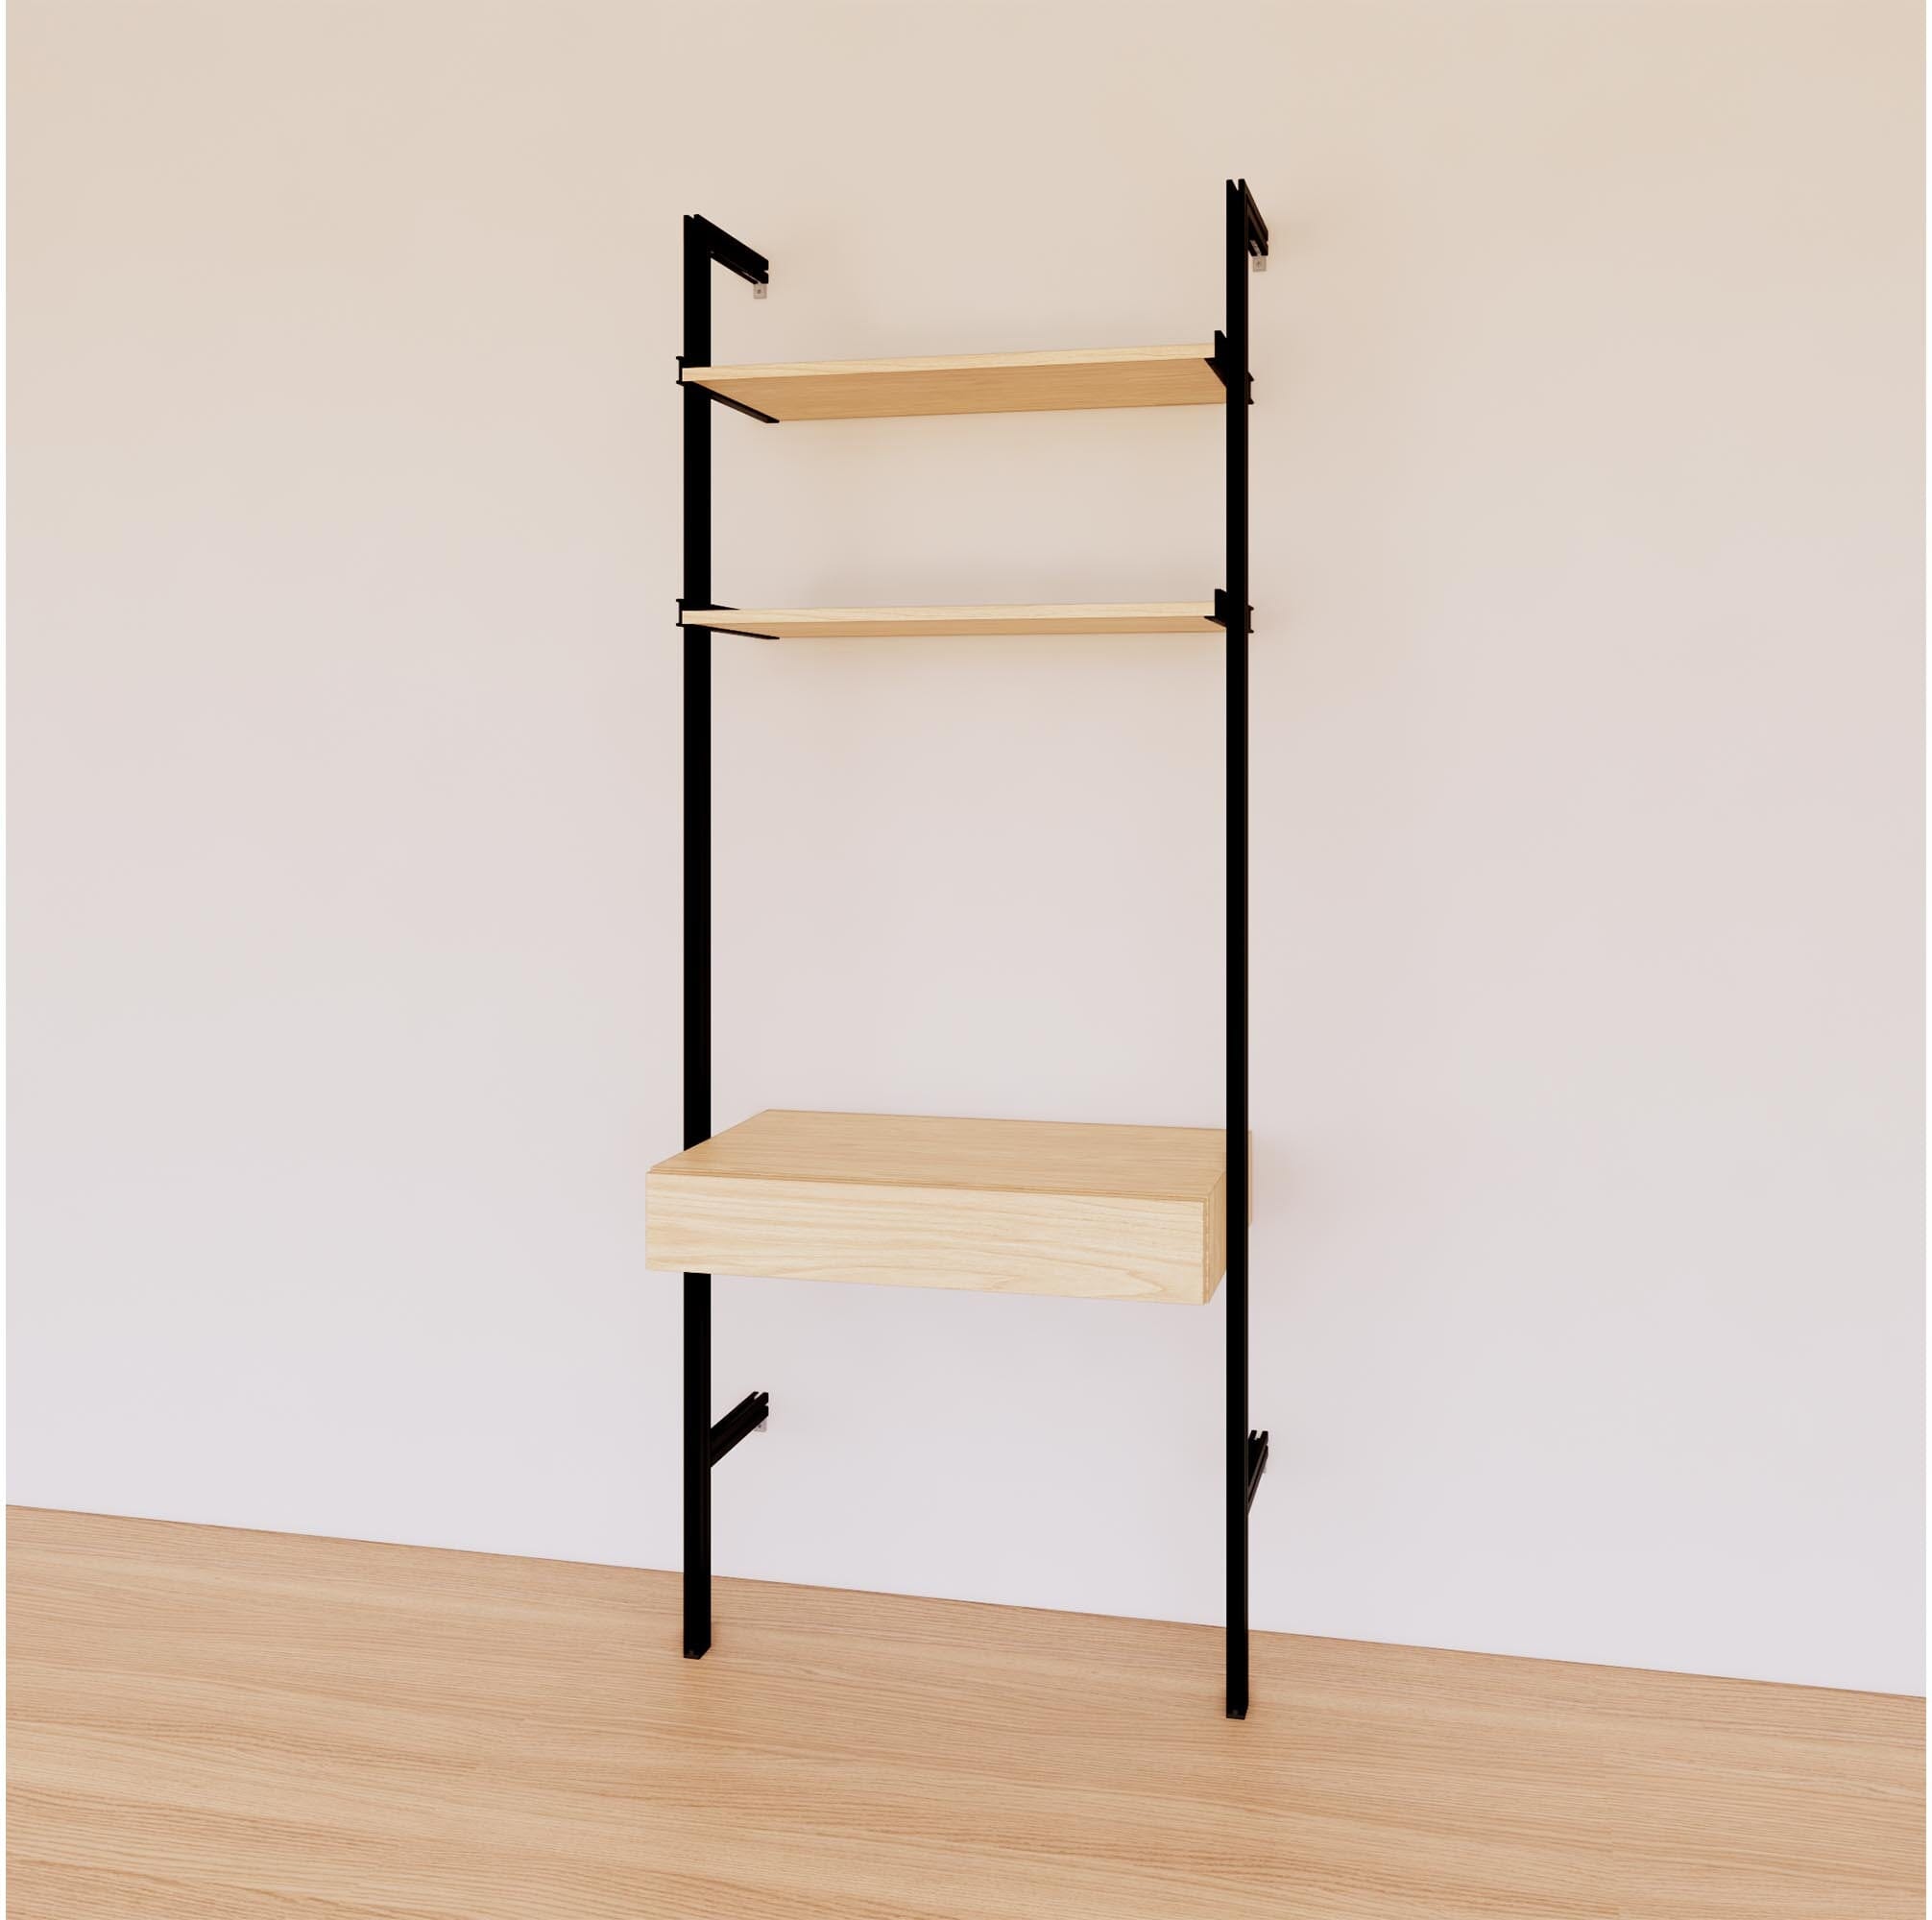 31&quot; Desk Option with Shelves